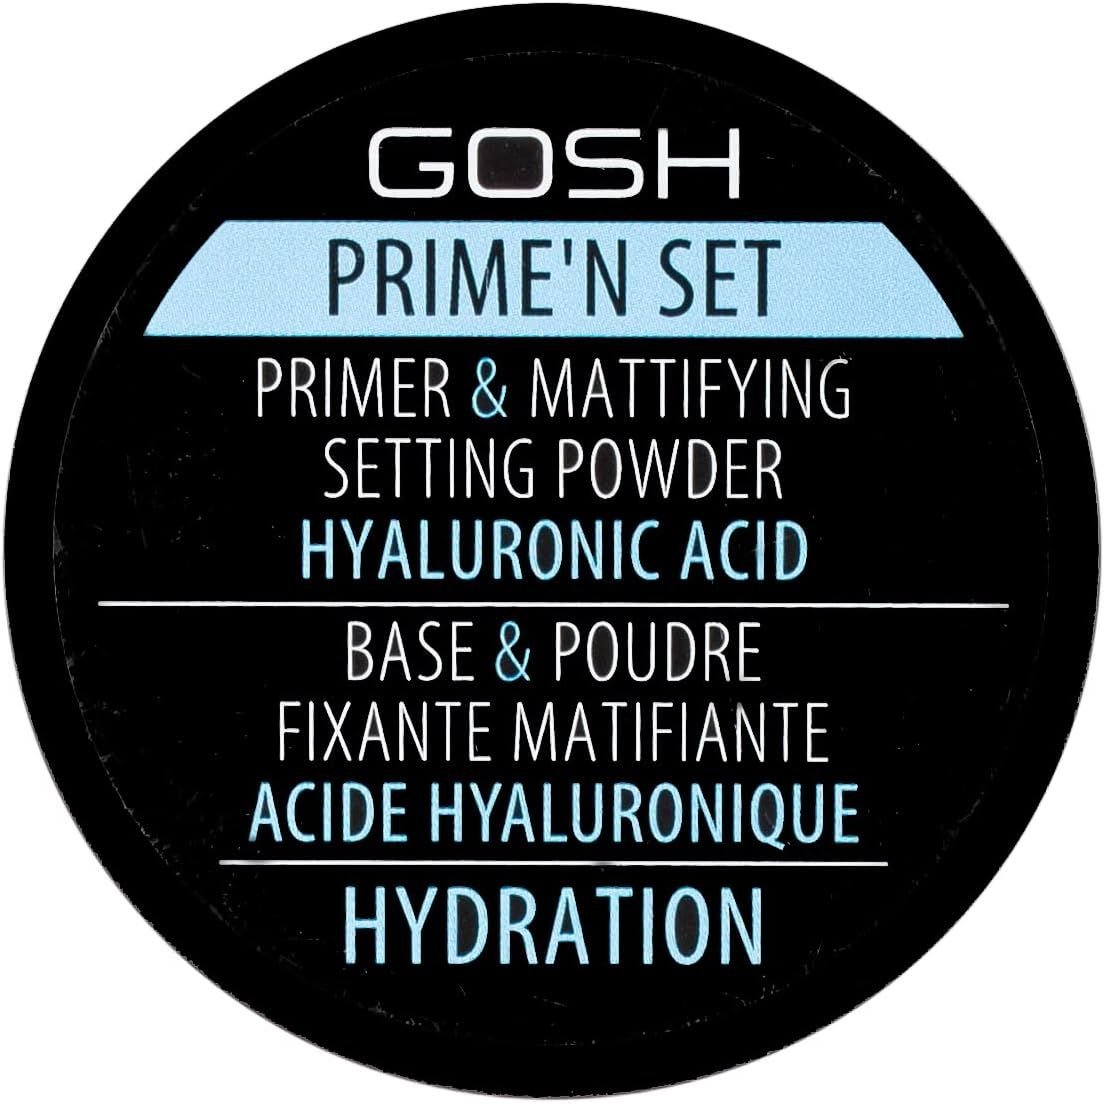 Основа под макияж пудровая Gosh Prime'n Set Primer & Mattifying Setting Powder Hyaluronic Acid рассыпчатая, 003 Hydration, 7 г - фото 1